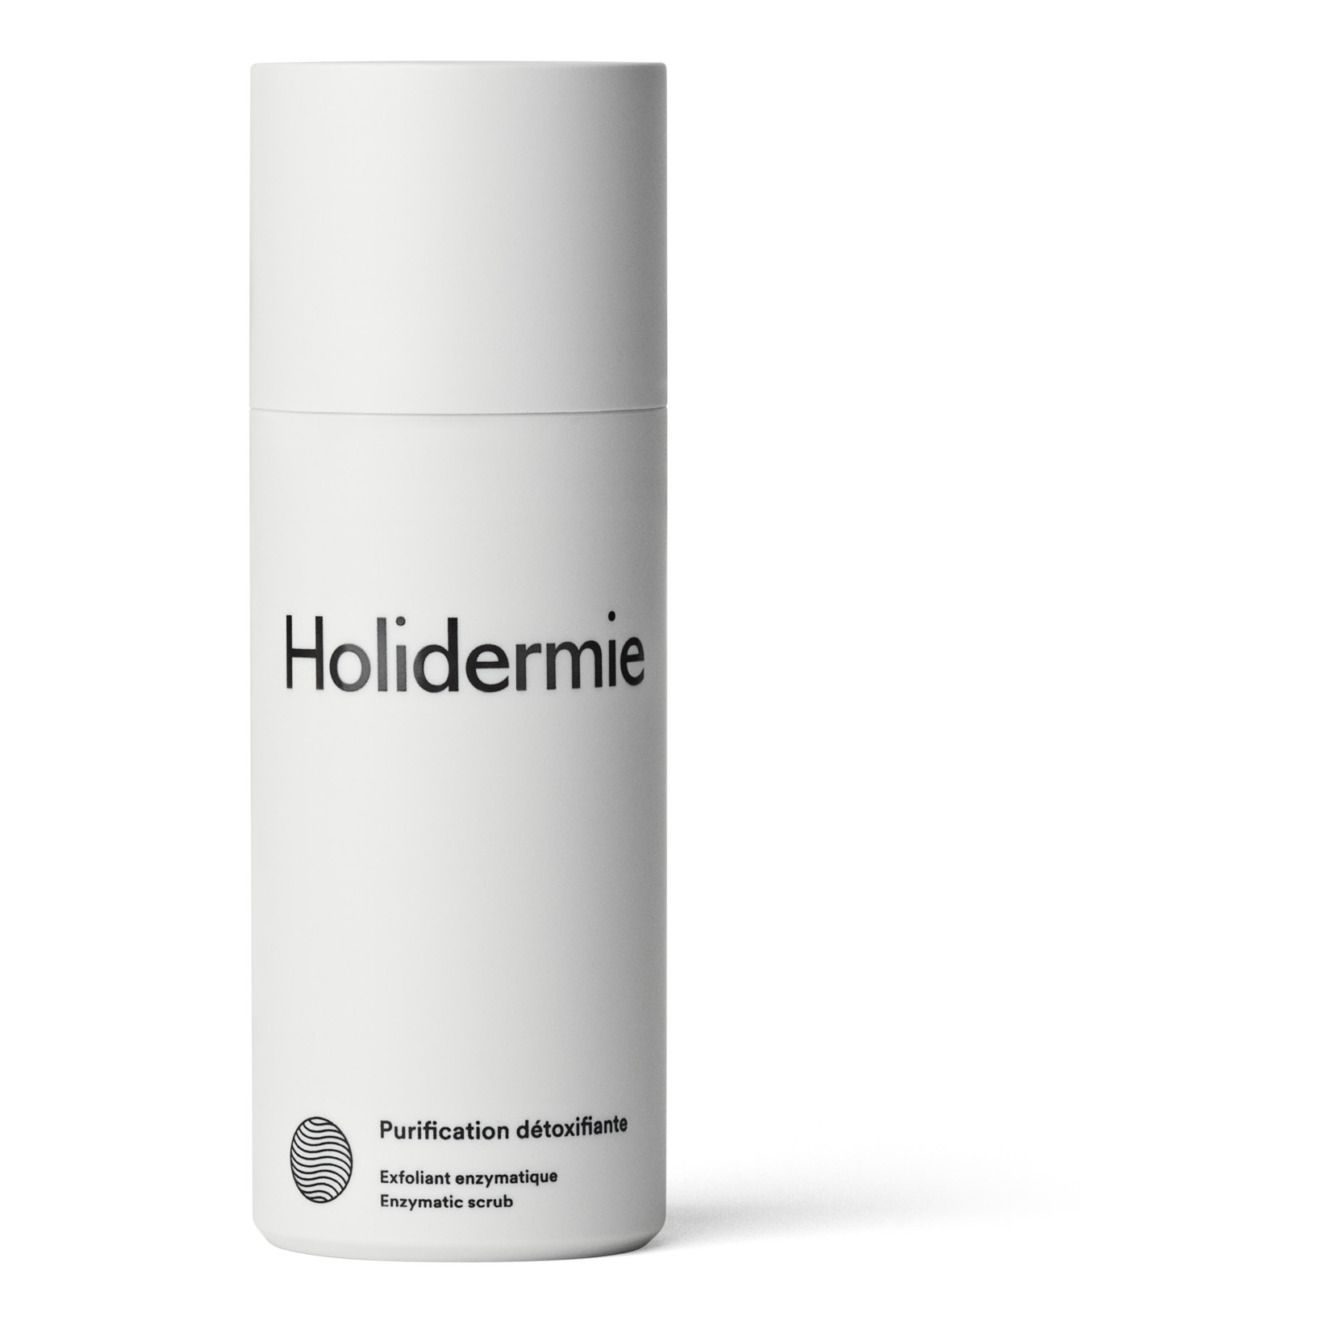 Holidermie - Exfoliant enzymatique Purification détoxifiante - 50 ml - Blanc